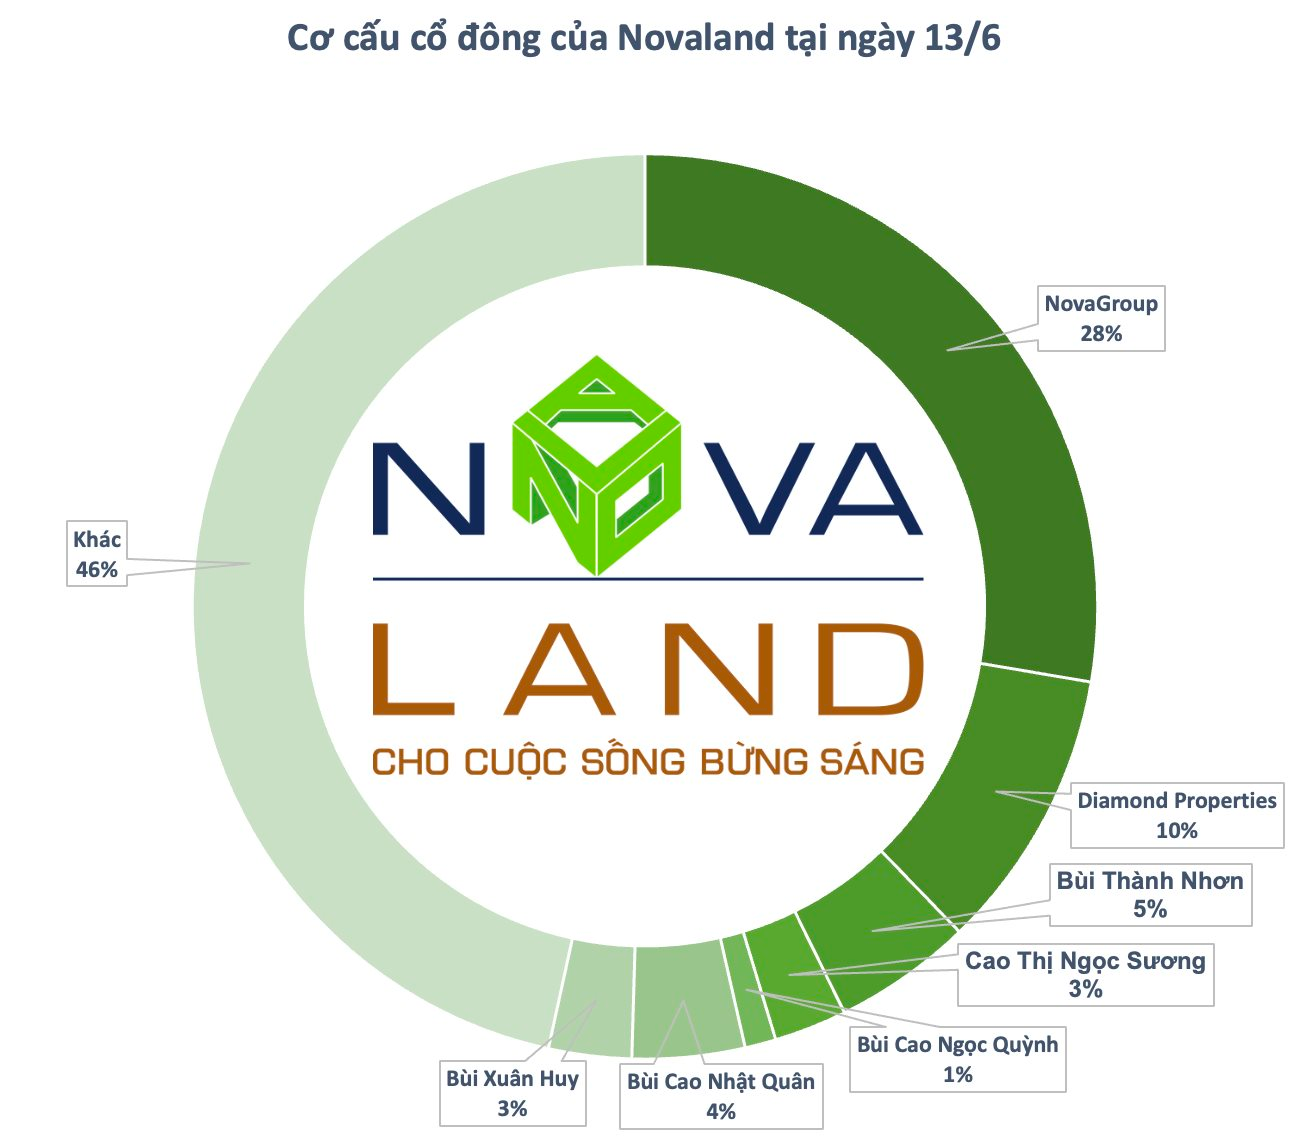 NovaGroup đăng ký bán hơn 136 triệu cổ phiếu NVL, nhóm cổ đông liên quan đến ông Bùi Thành Nhơn sẽ giảm tỷ lệ sở hữu tại Novaland xuống dưới 51% - Ảnh 1.